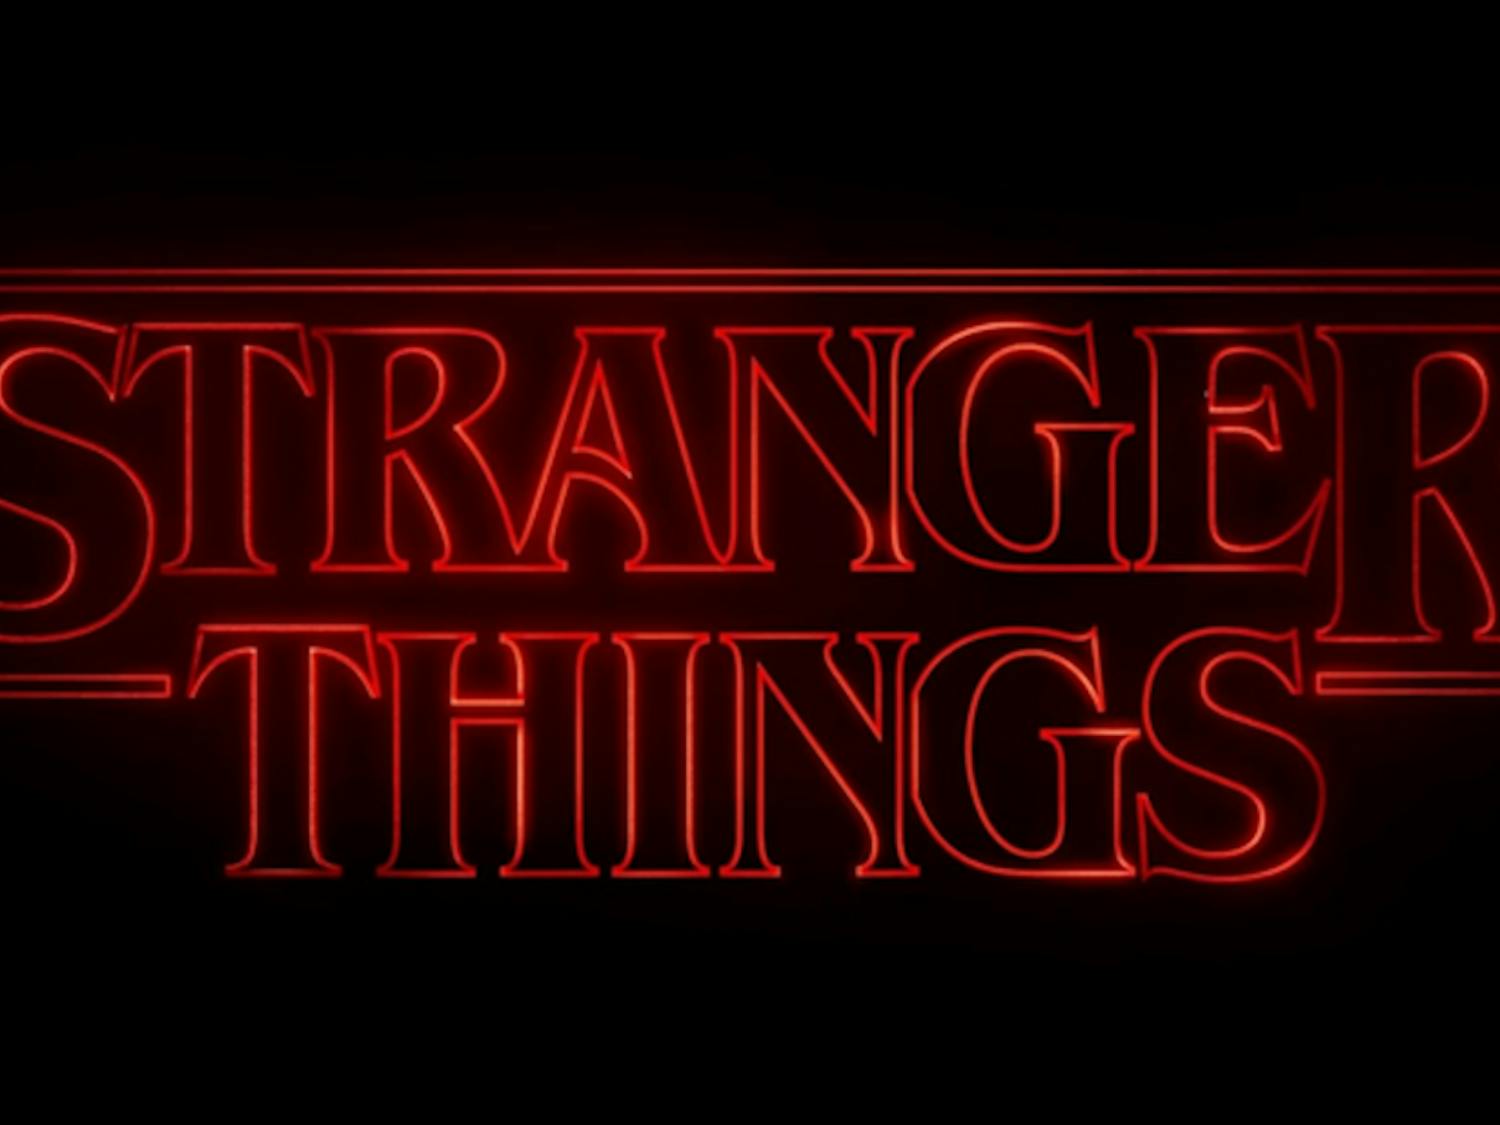 Stranger_Things_logo.png